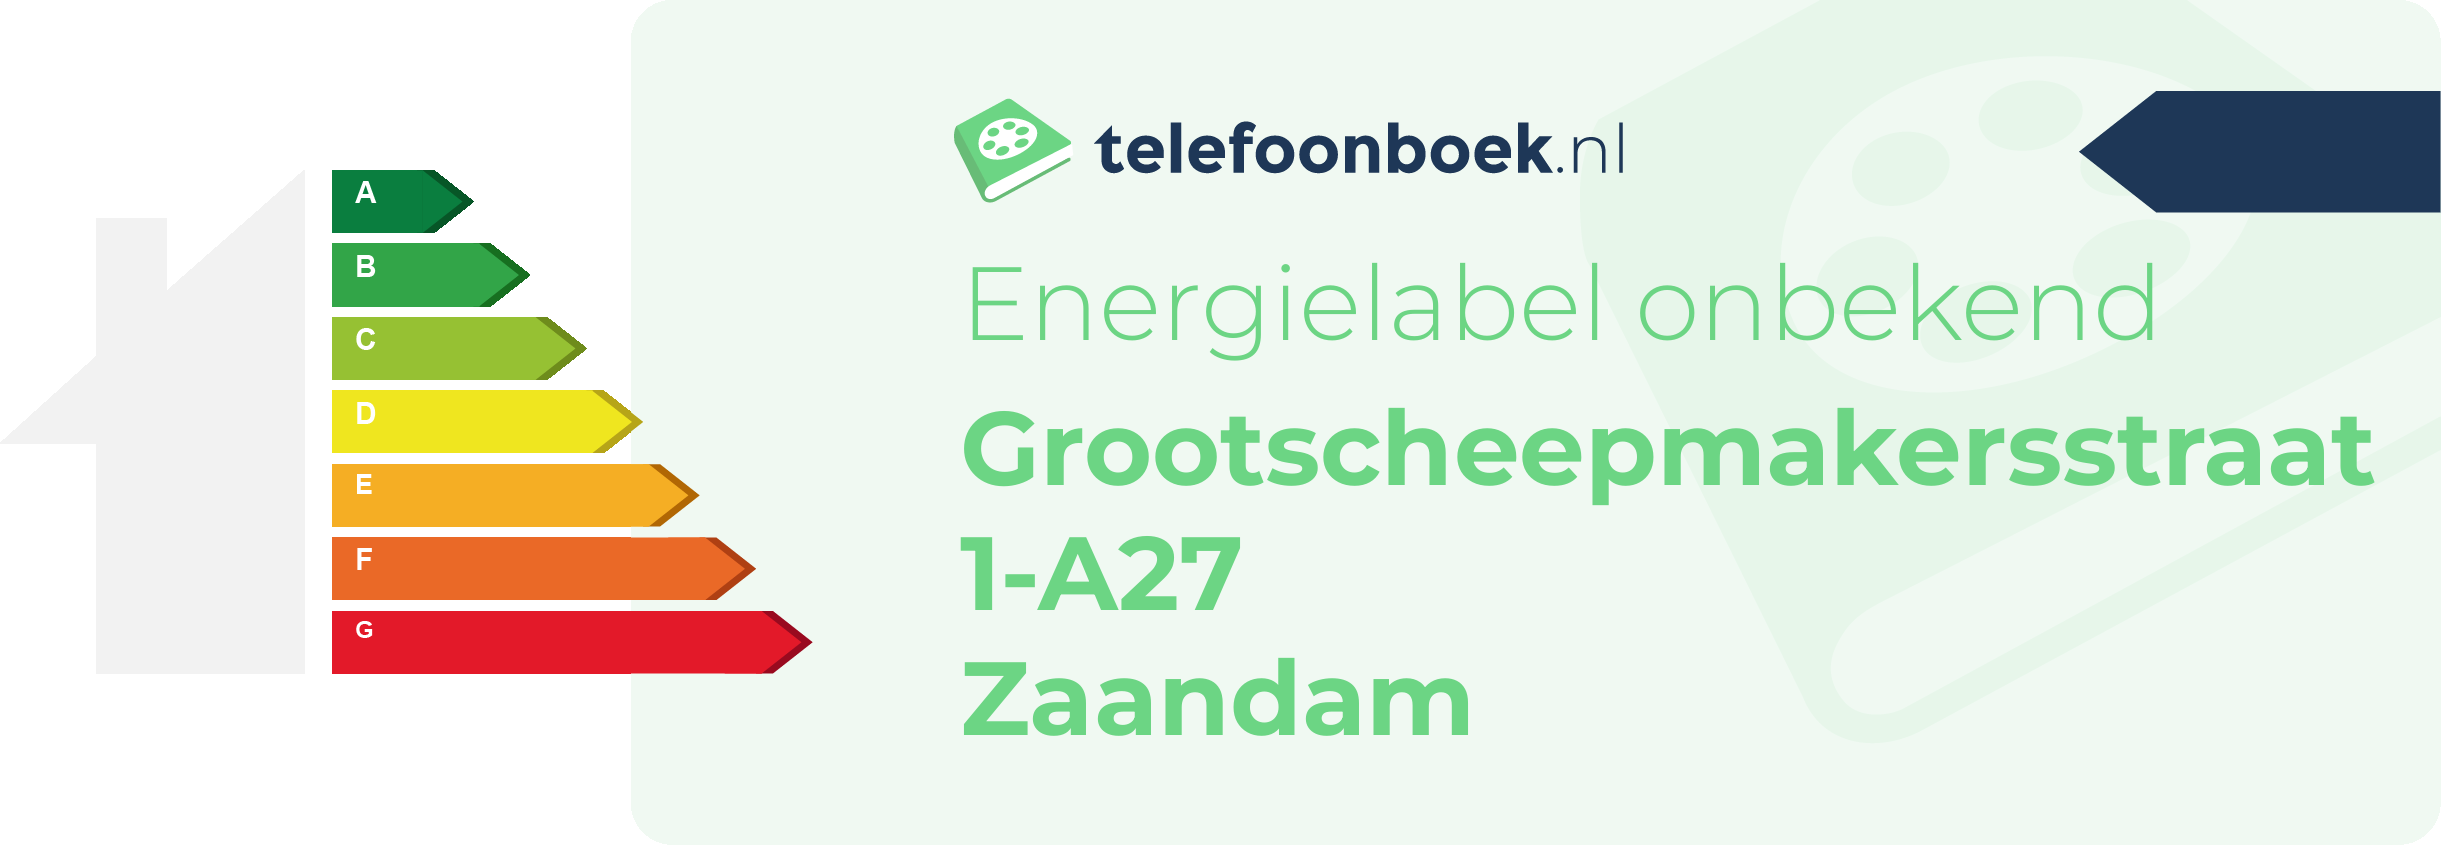 Energielabel Grootscheepmakersstraat 1-A27 Zaandam